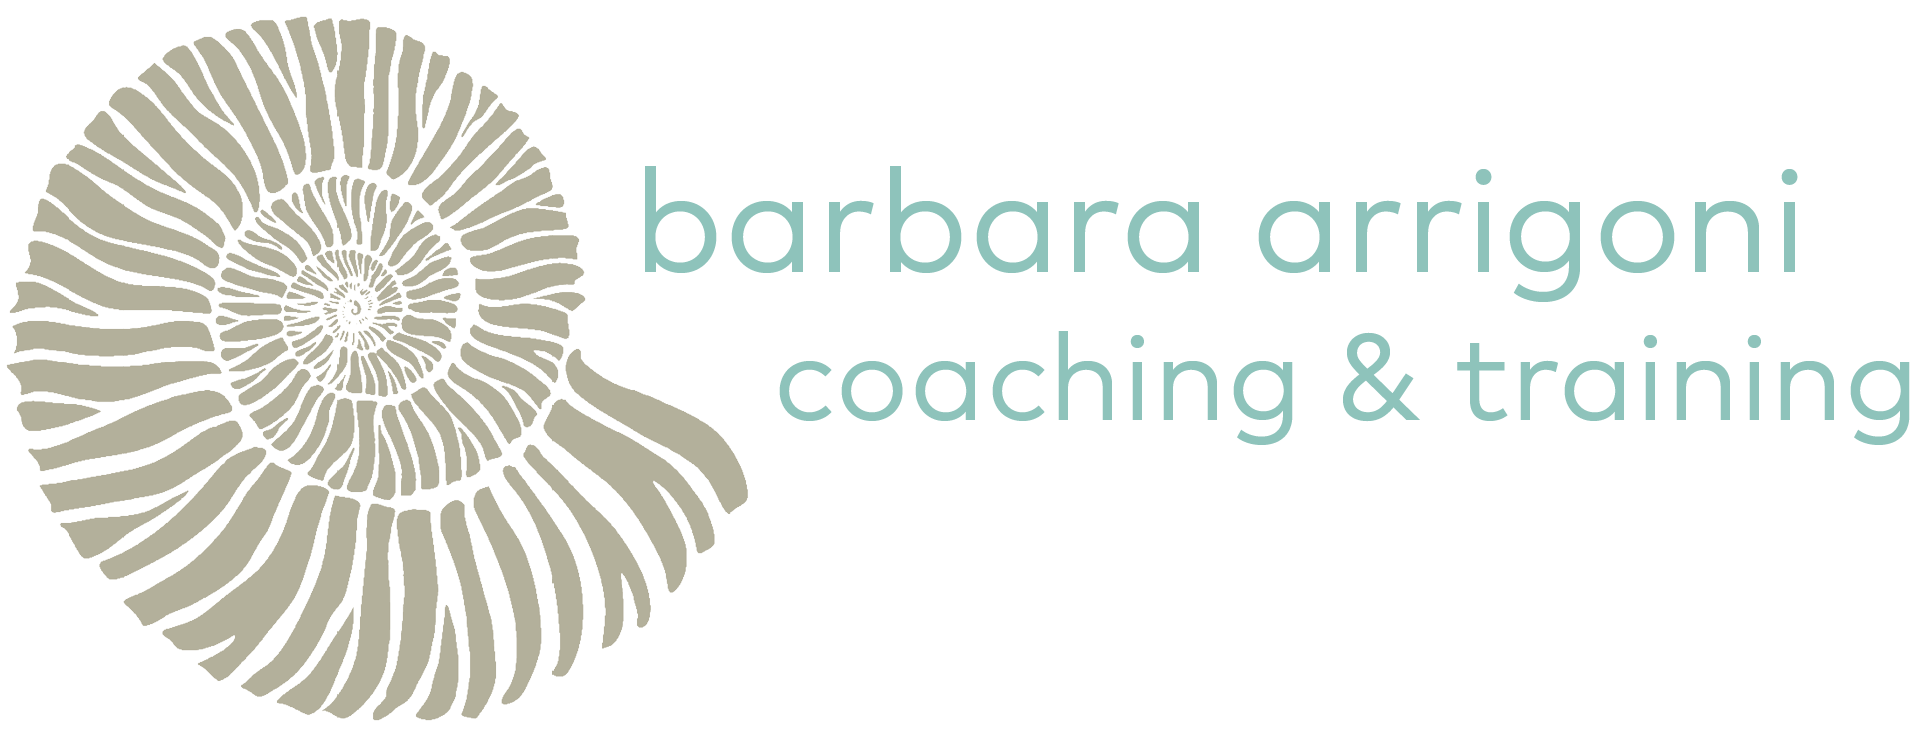 barbara arrigoni coaching & training